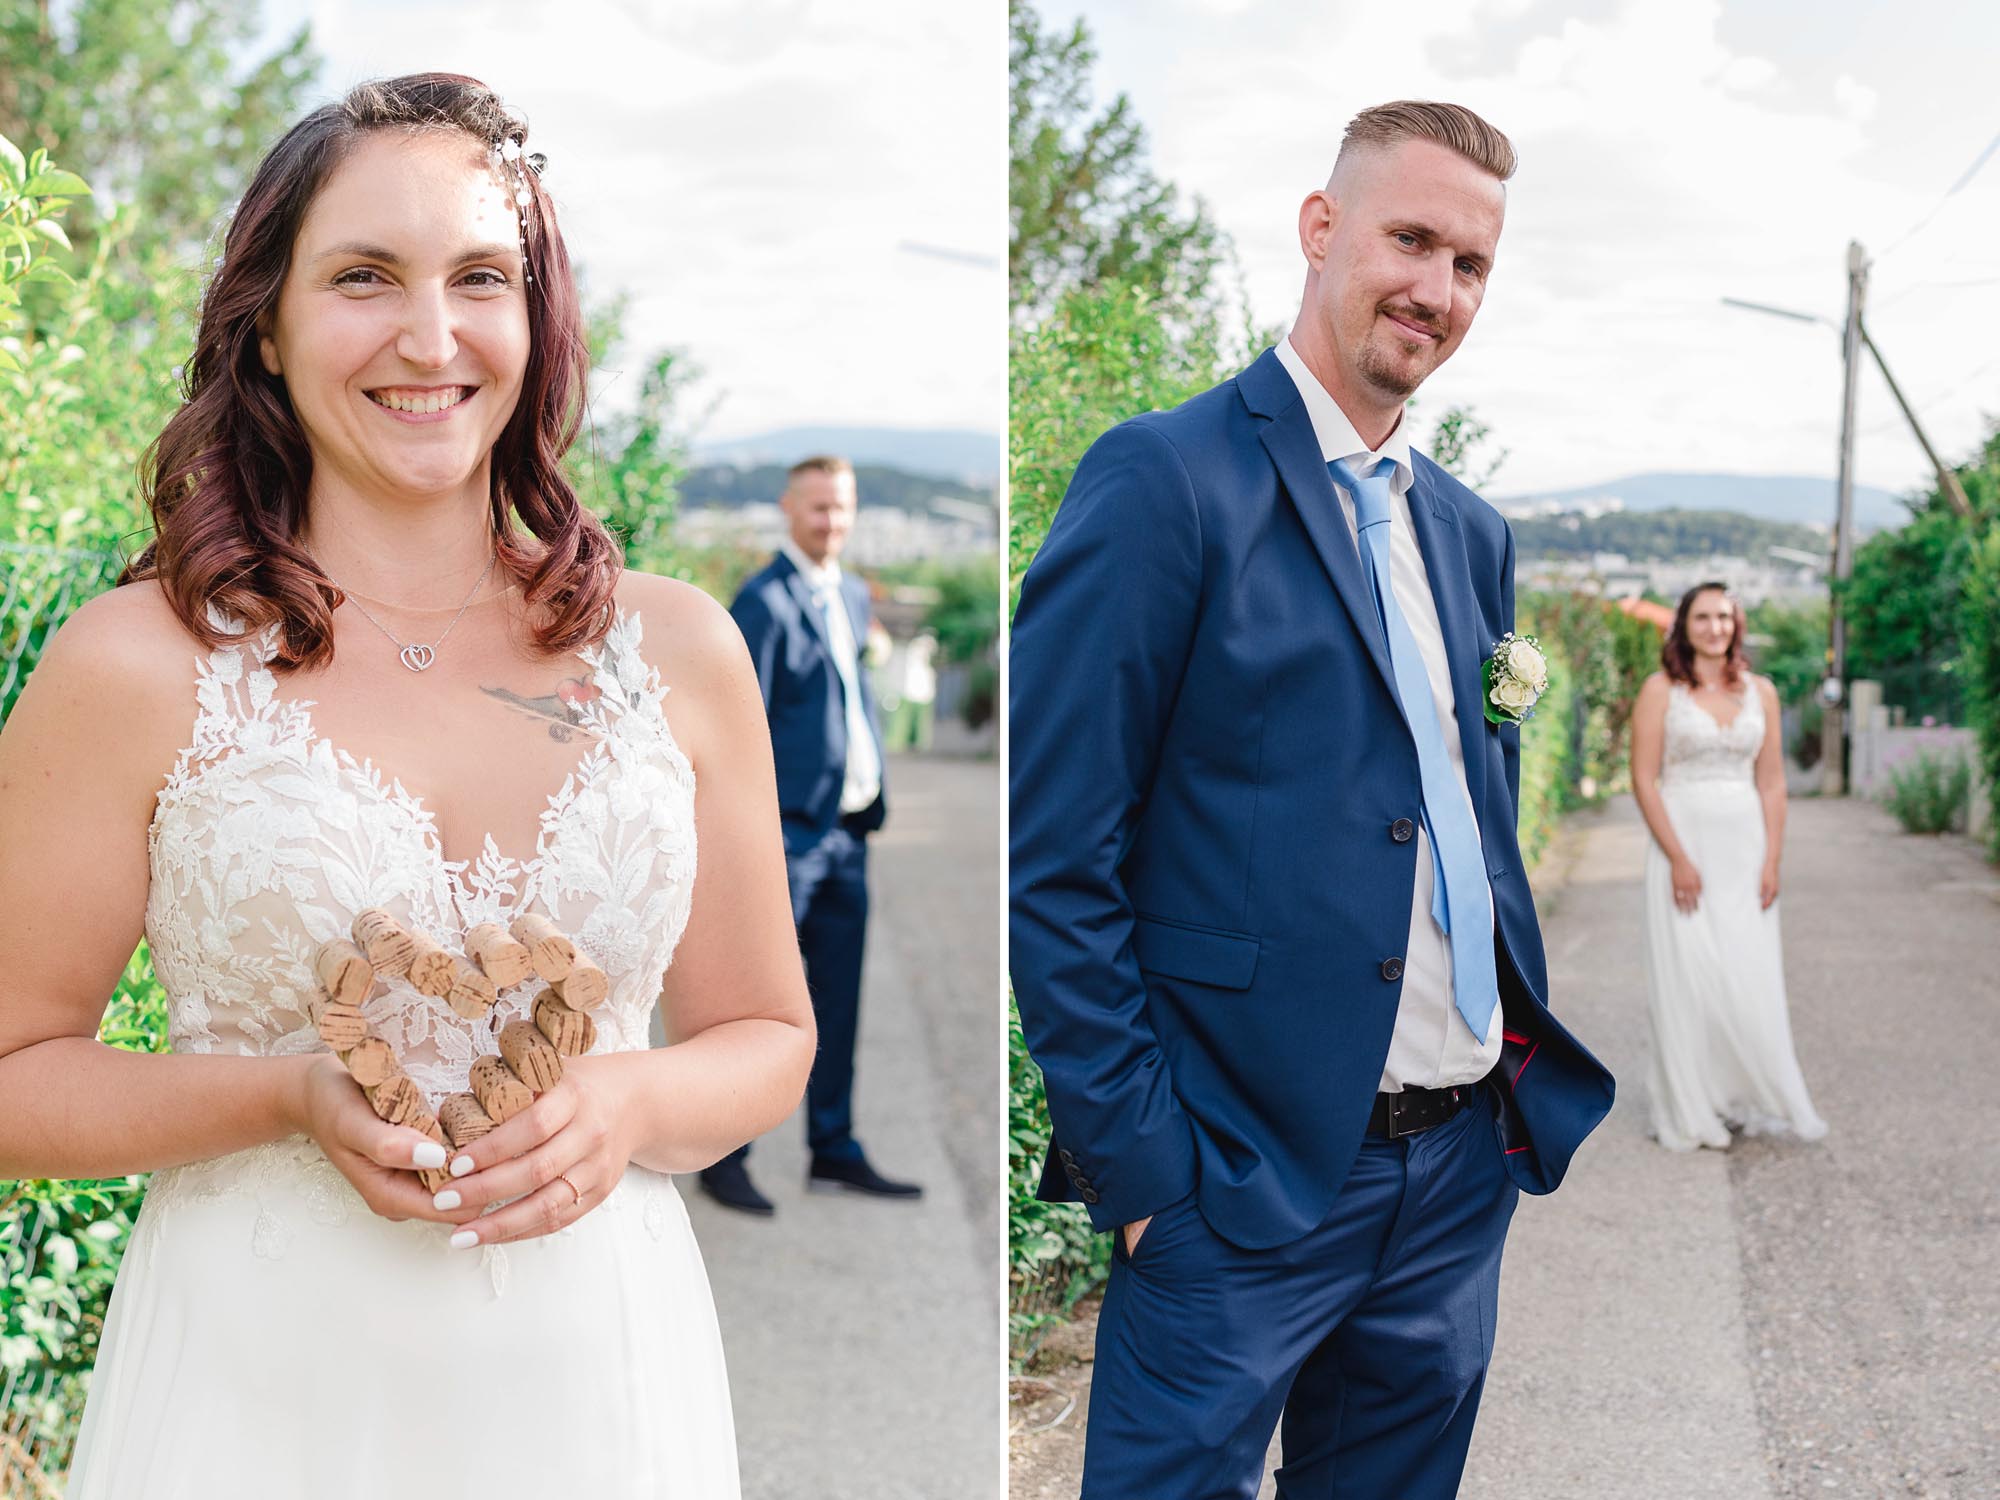 Hochzeitsfotos_Hochzeitsreportage in Wien_Brautpaarshooting_Tiefenunschärfe-Collage